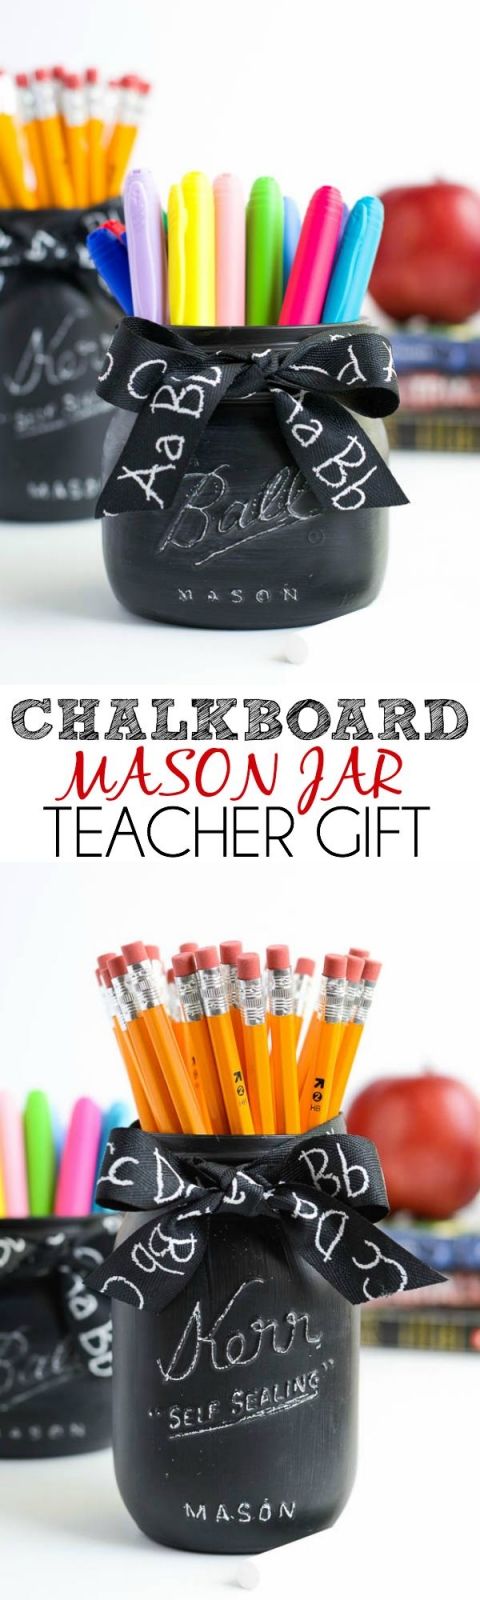 Chalkboard Mason Jar Teacher Gift